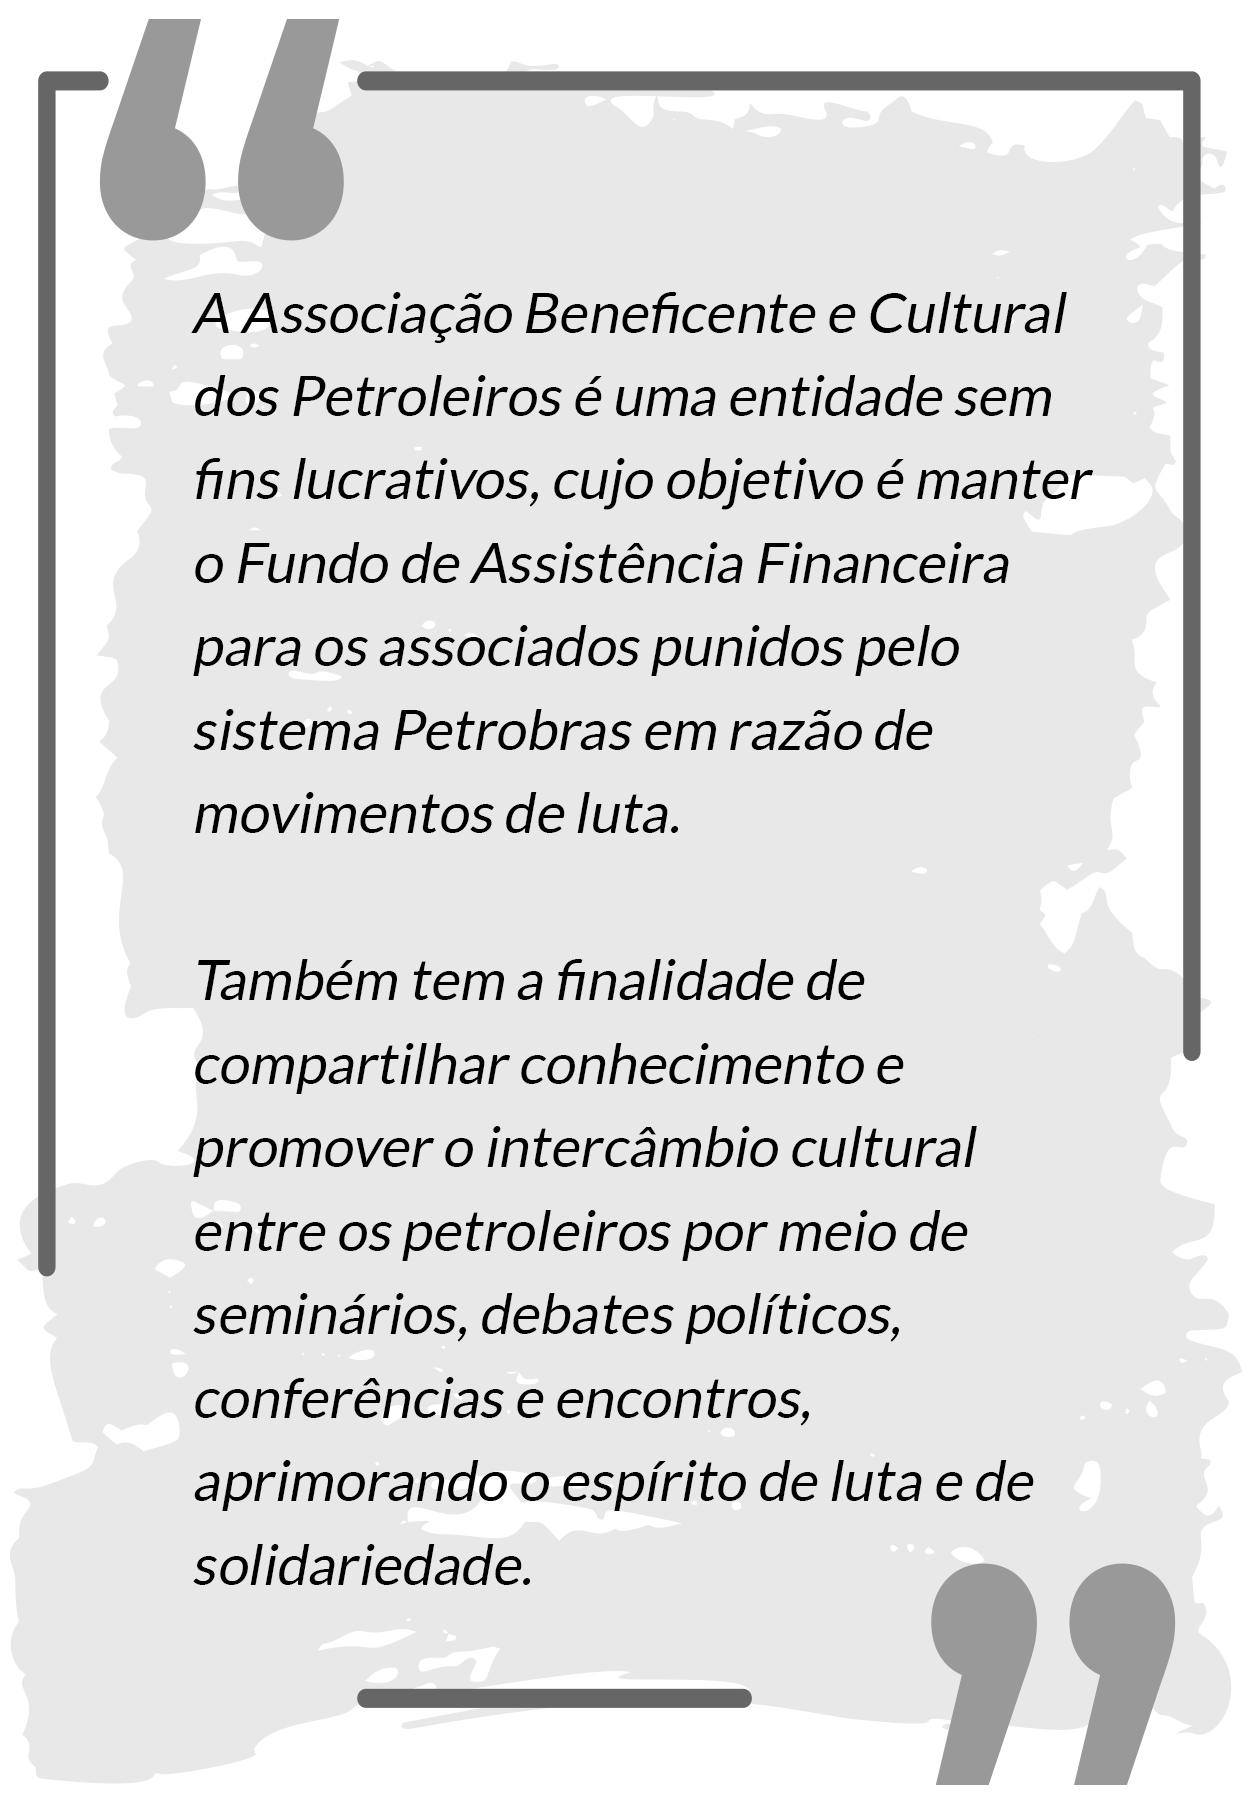 Texto sobre a história da ABC Petroleiros